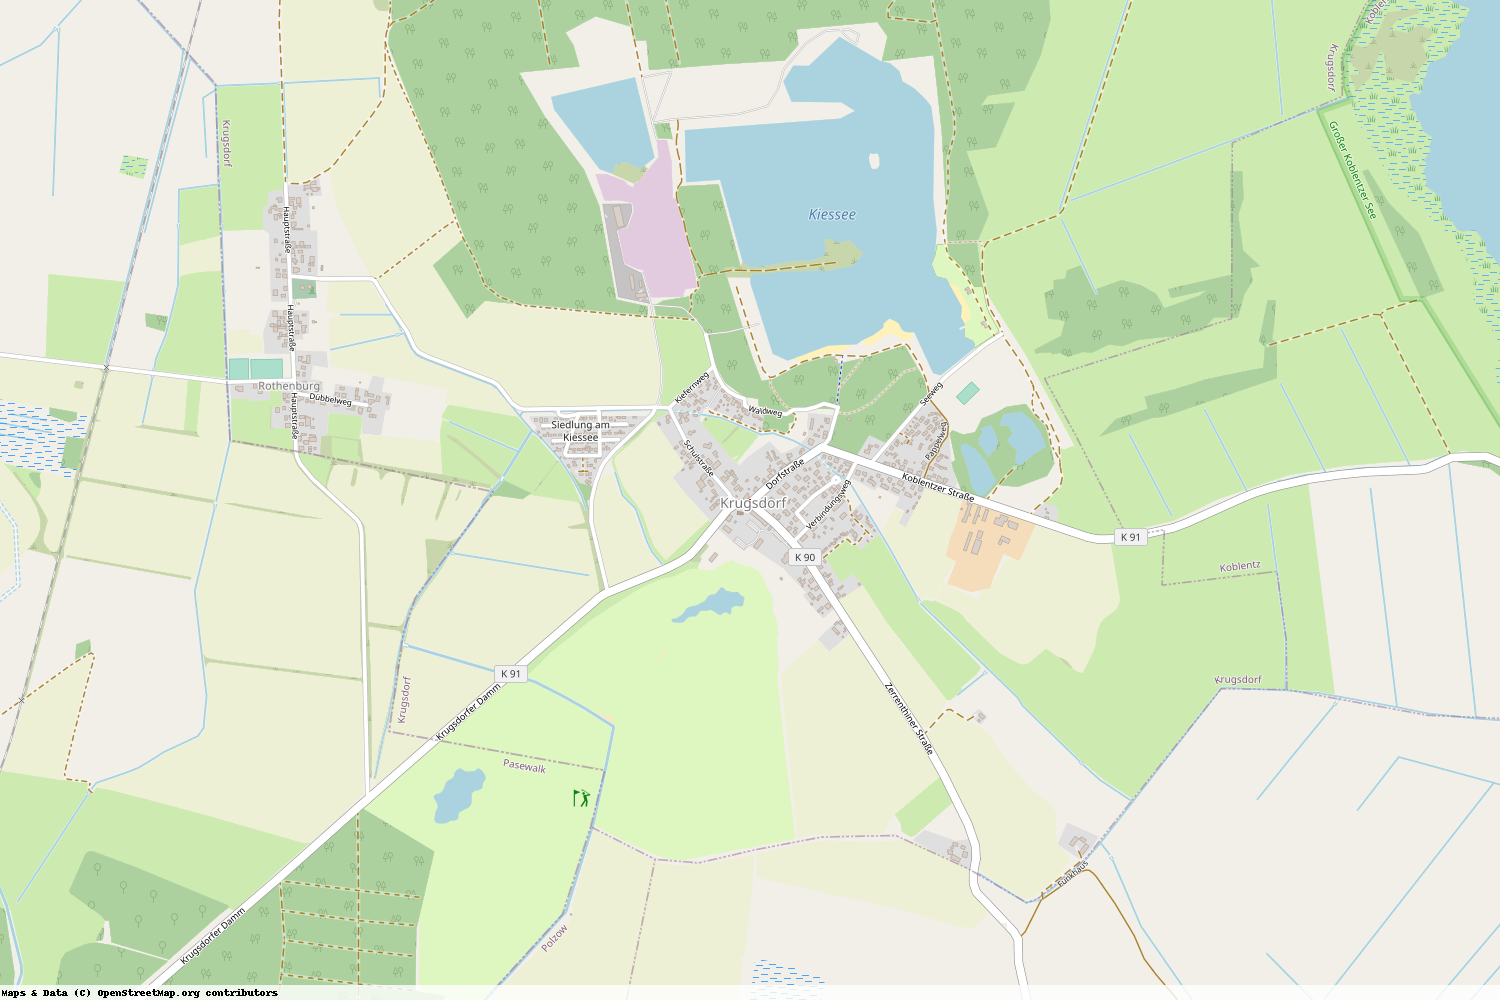 Ist gerade Stromausfall in Mecklenburg-Vorpommern - Vorpommern-Greifswald - Krugsdorf?